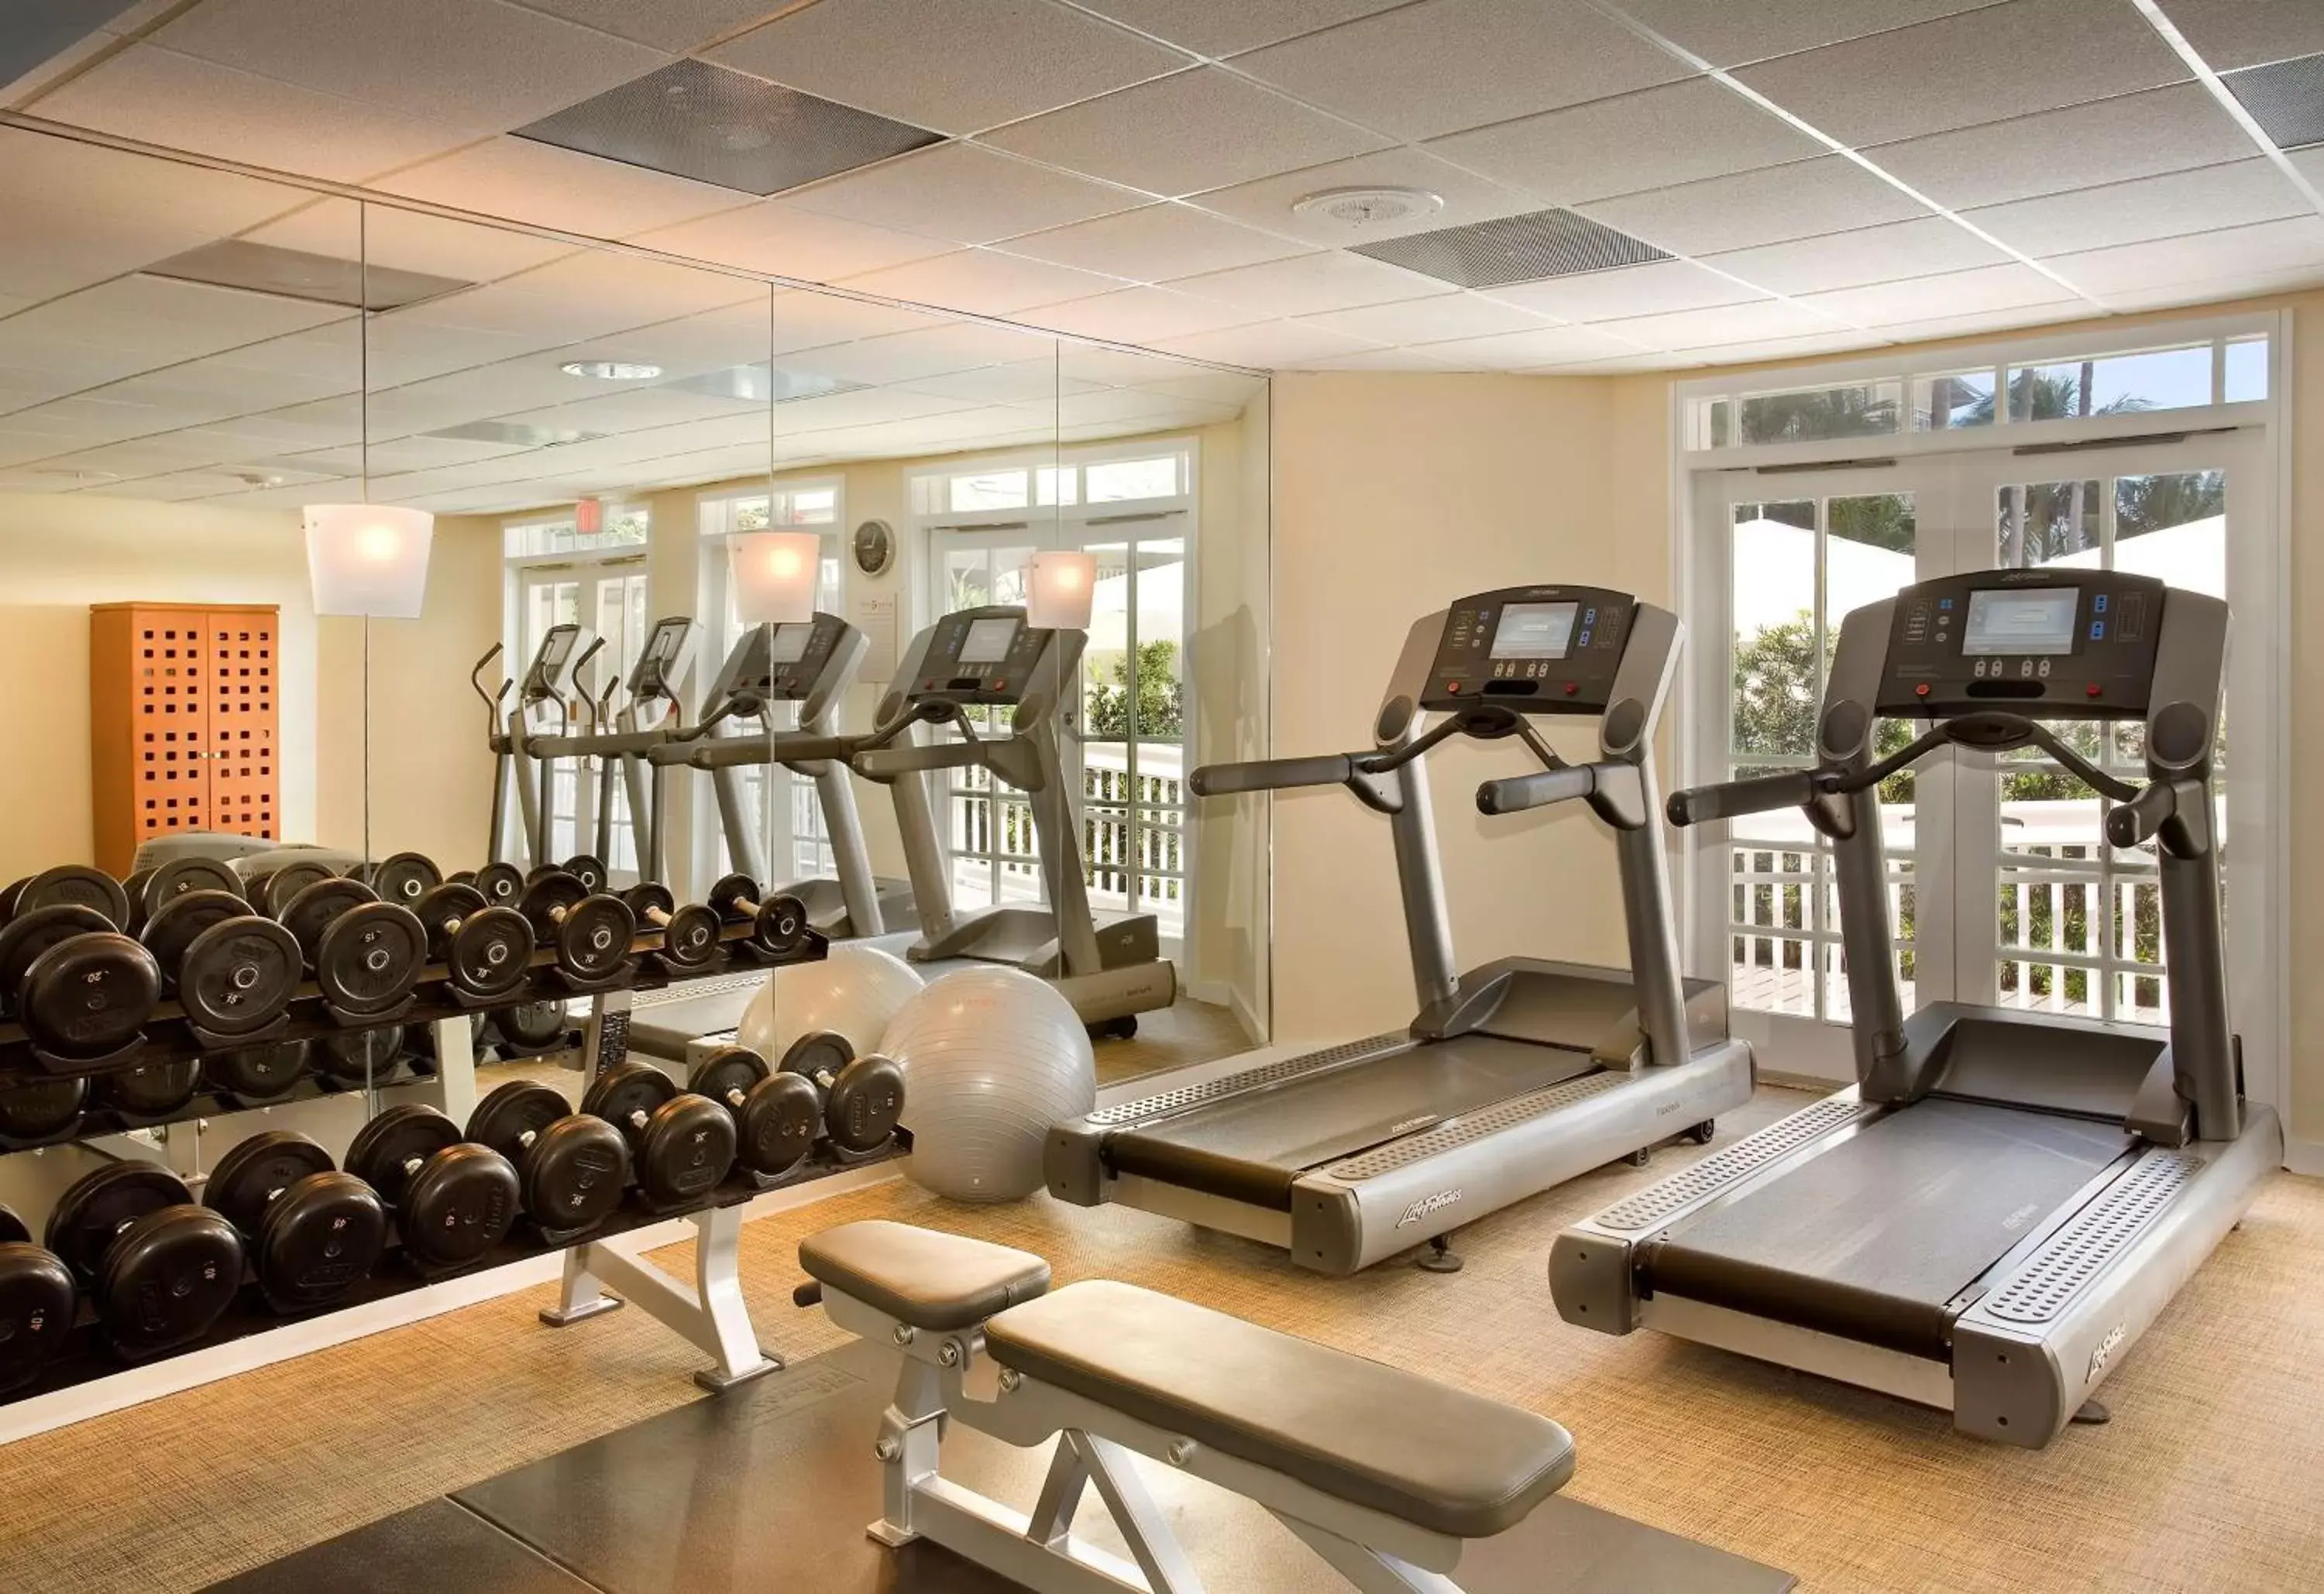 Fitness centre/facilities, Fitness Center/Facilities in Hyatt Centric Key West Resort & Spa